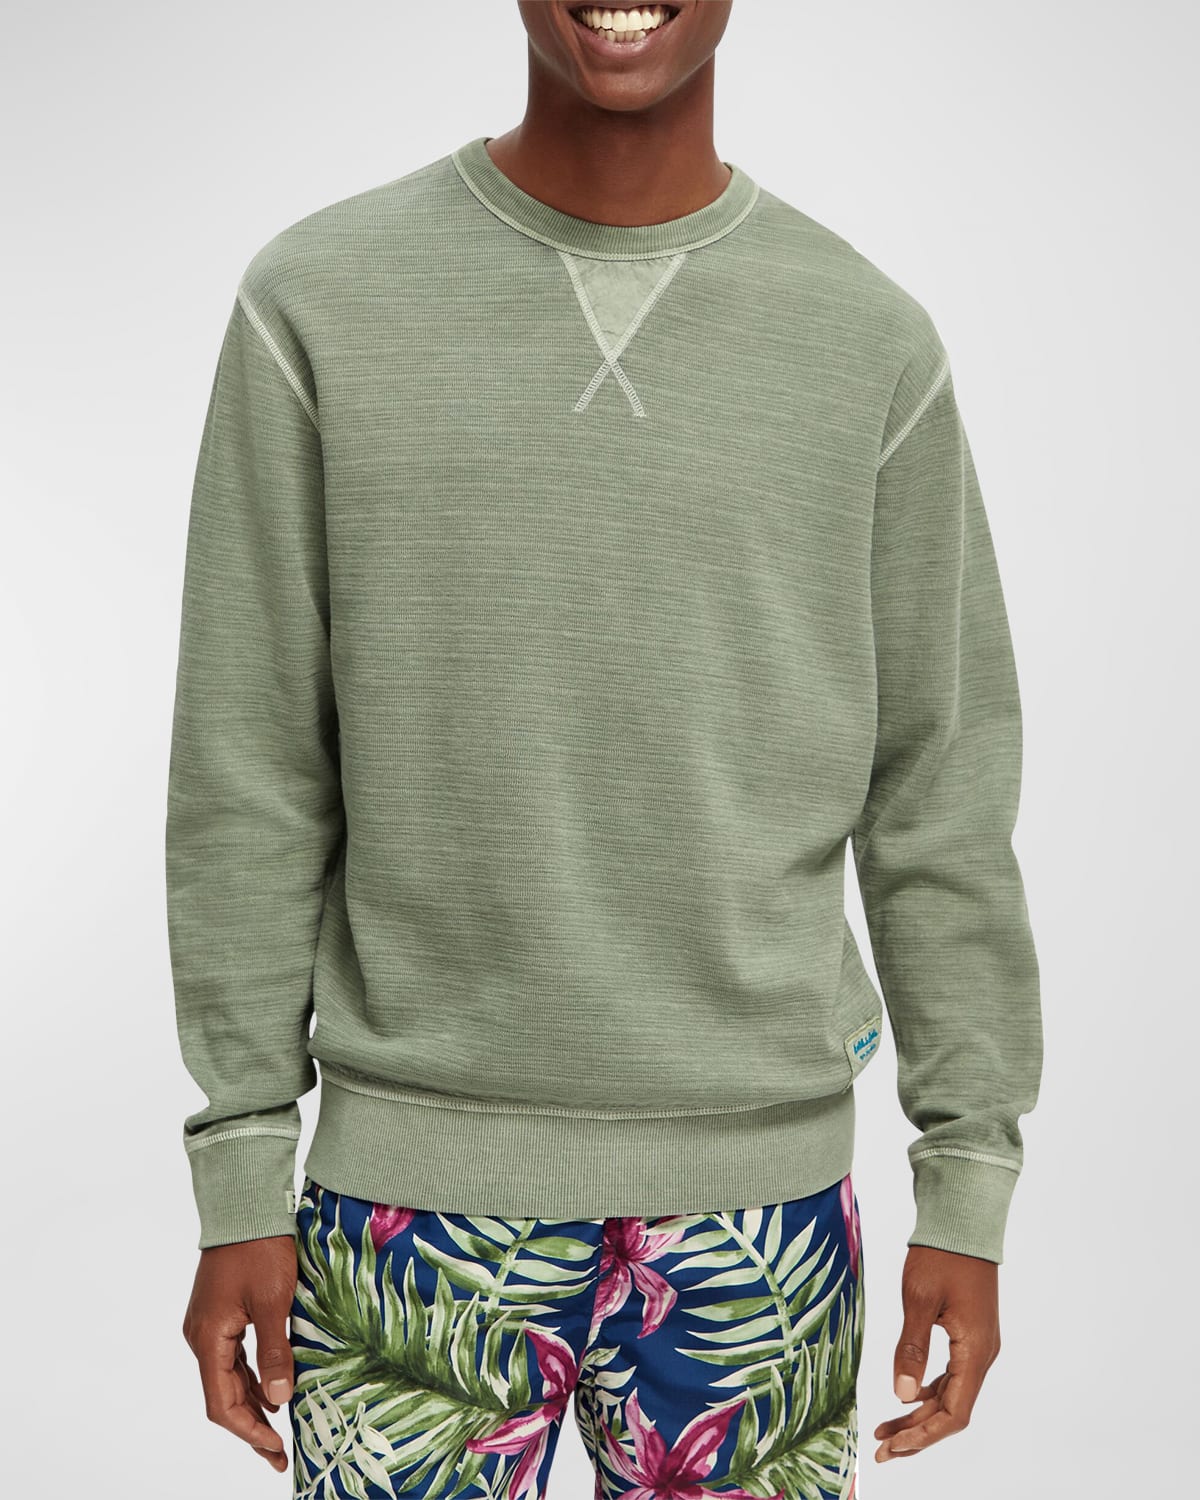 Men's Garment-Dyed Structured Sweatshirt